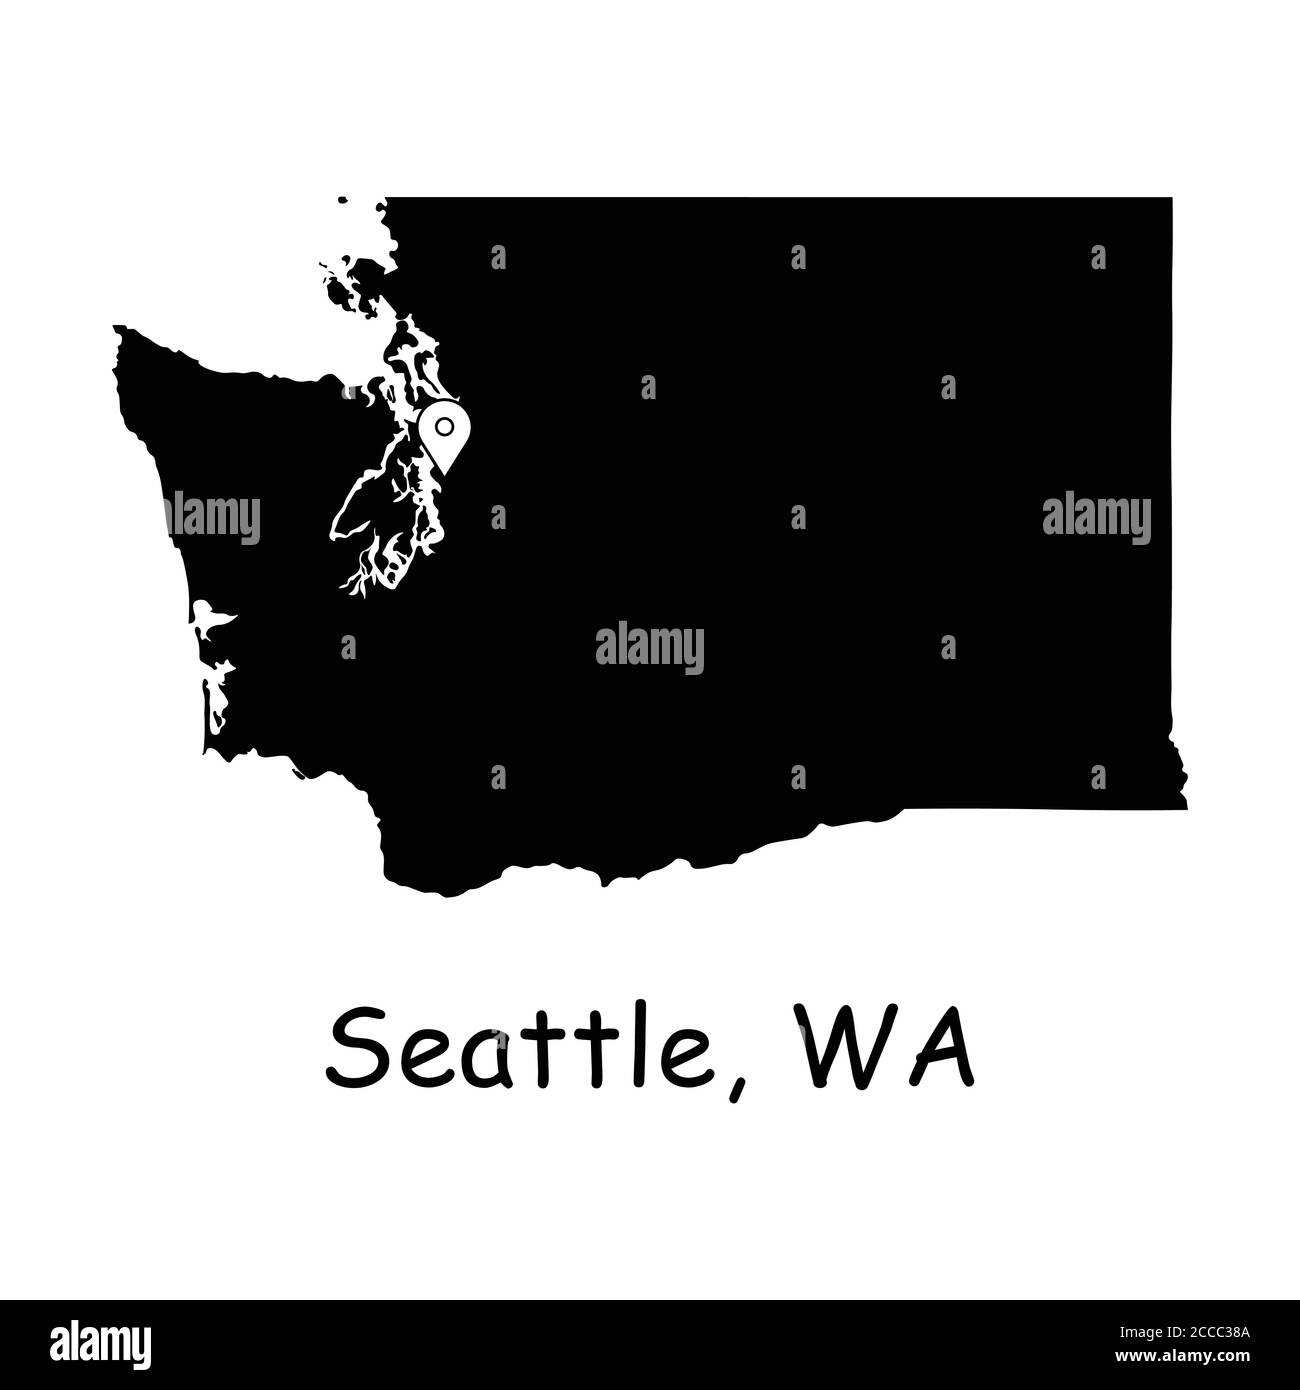 Seattle auf Washington State Map. Detaillierte WA State Map mit Location Pin auf Seattle City. Schwarze Silhouette Vektorkarte isoliert auf weißem Hintergrund. Stock Vektor